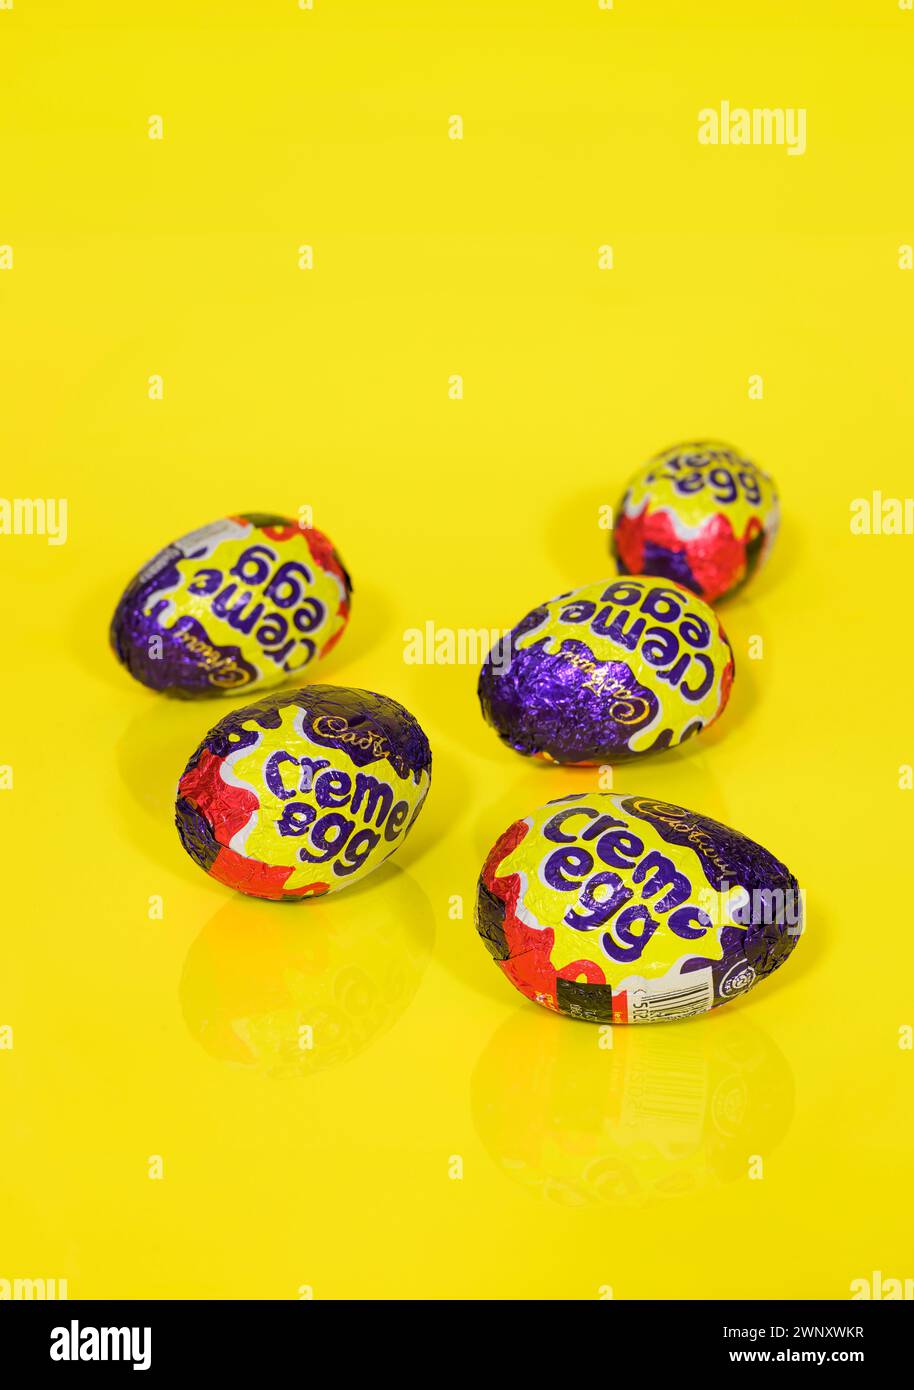 Cinq oeufs Cadbury Creme sur fond jaune, oeufs de Pâques Banque D'Images